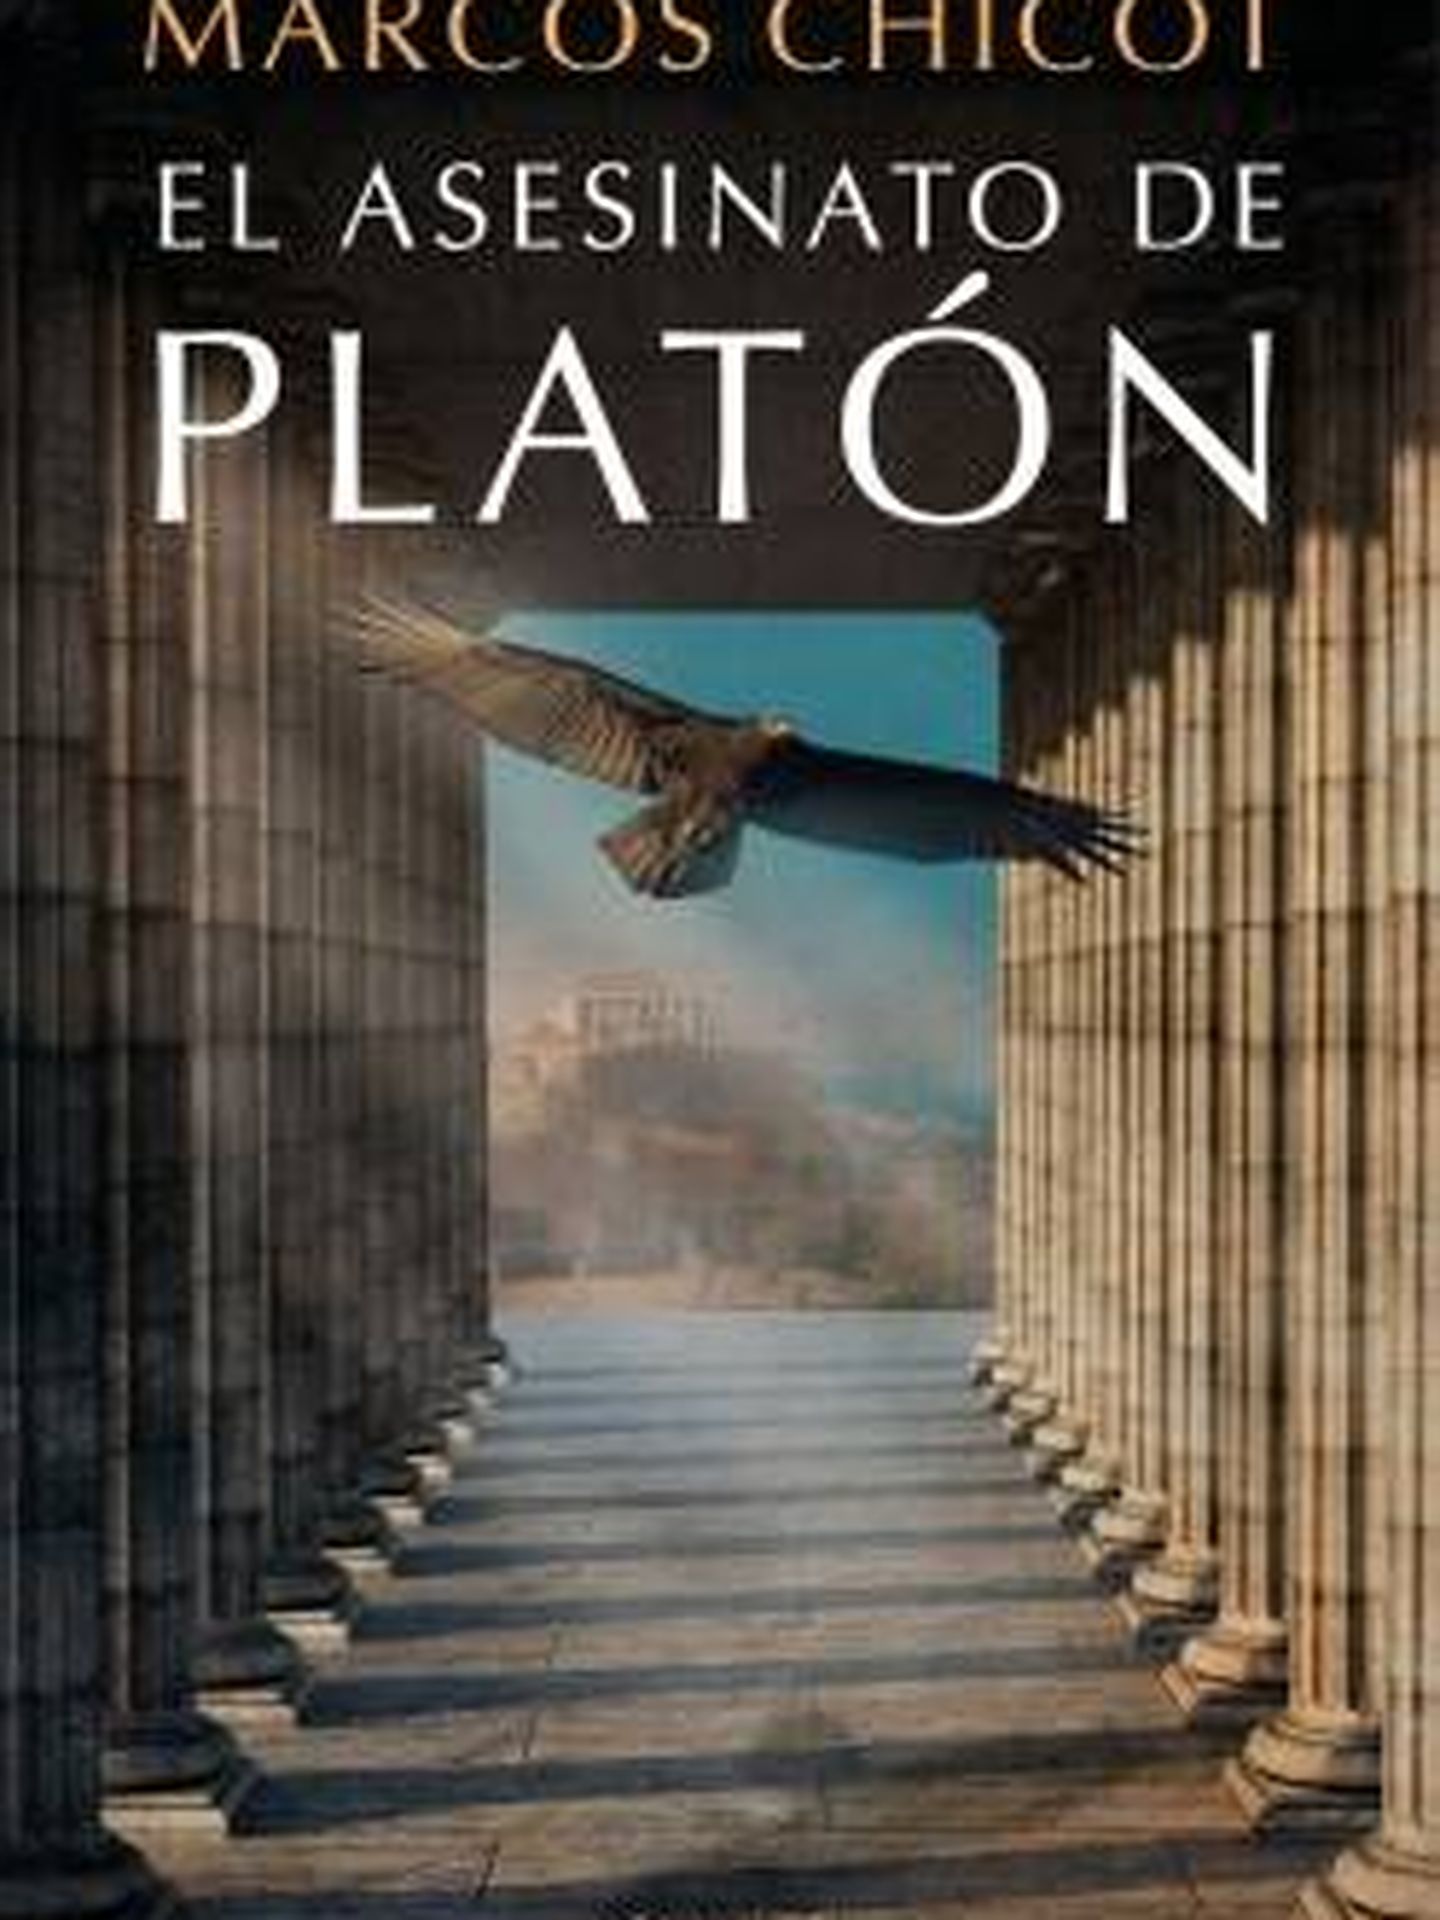 'El asesinato de Platón'